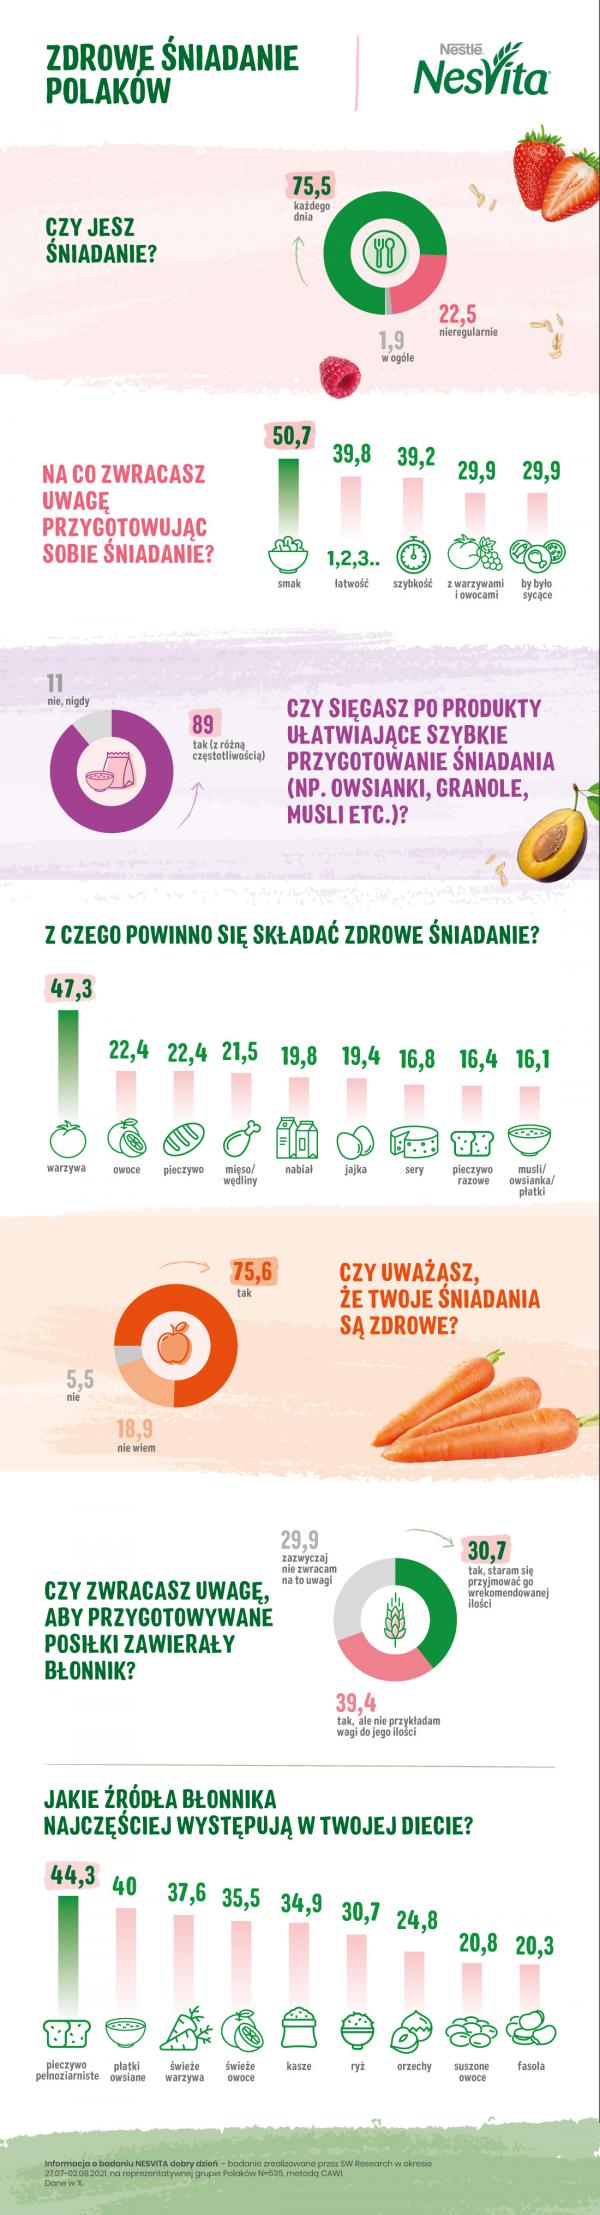 Zdrowe sniadanie Polakow infografika